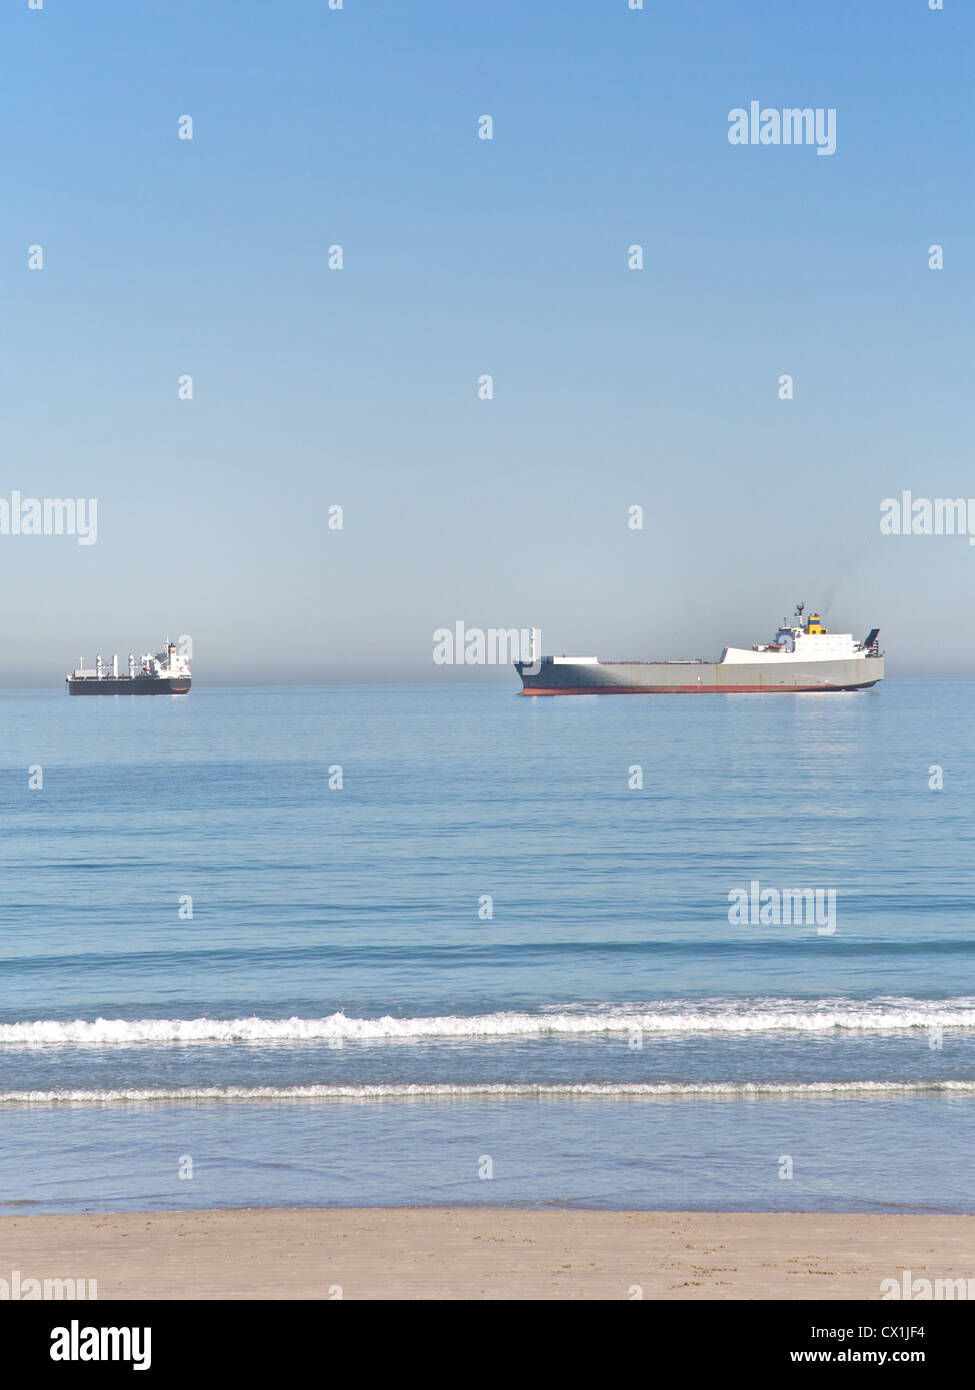 Shipping boats at sea Stock Photo